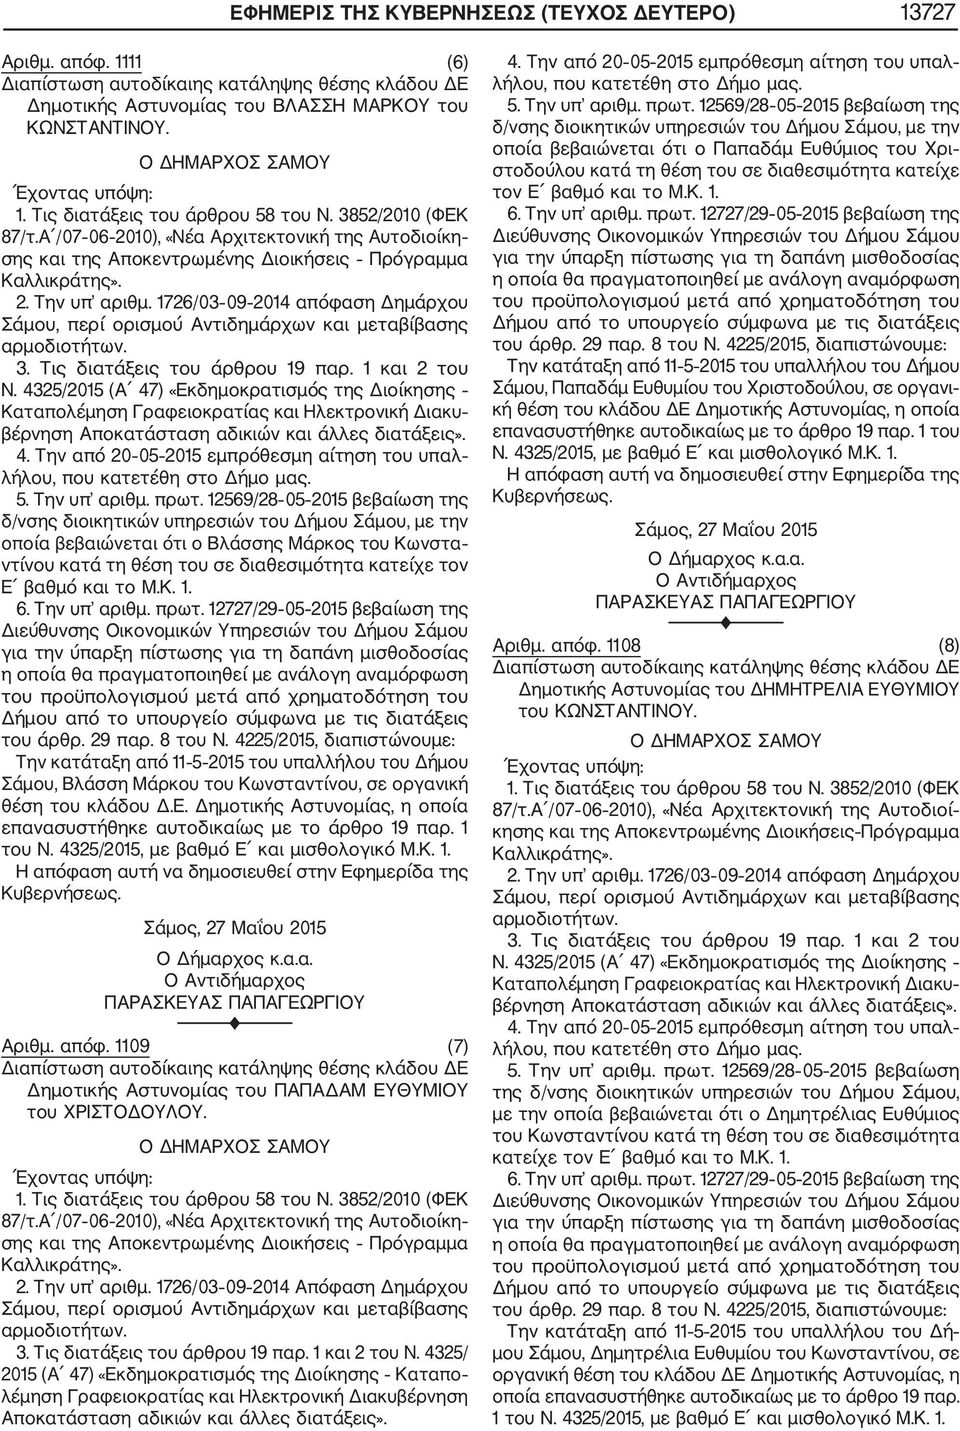 1726/03 09 2014 απόφαση Δημάρχου Σάμου, περί ορισμού Αντιδημάρχων και μεταβίβασης αρμοδιοτήτων. 3. Τις διατάξεις του άρθρου 19 παρ. 1 και 2 του Ν.